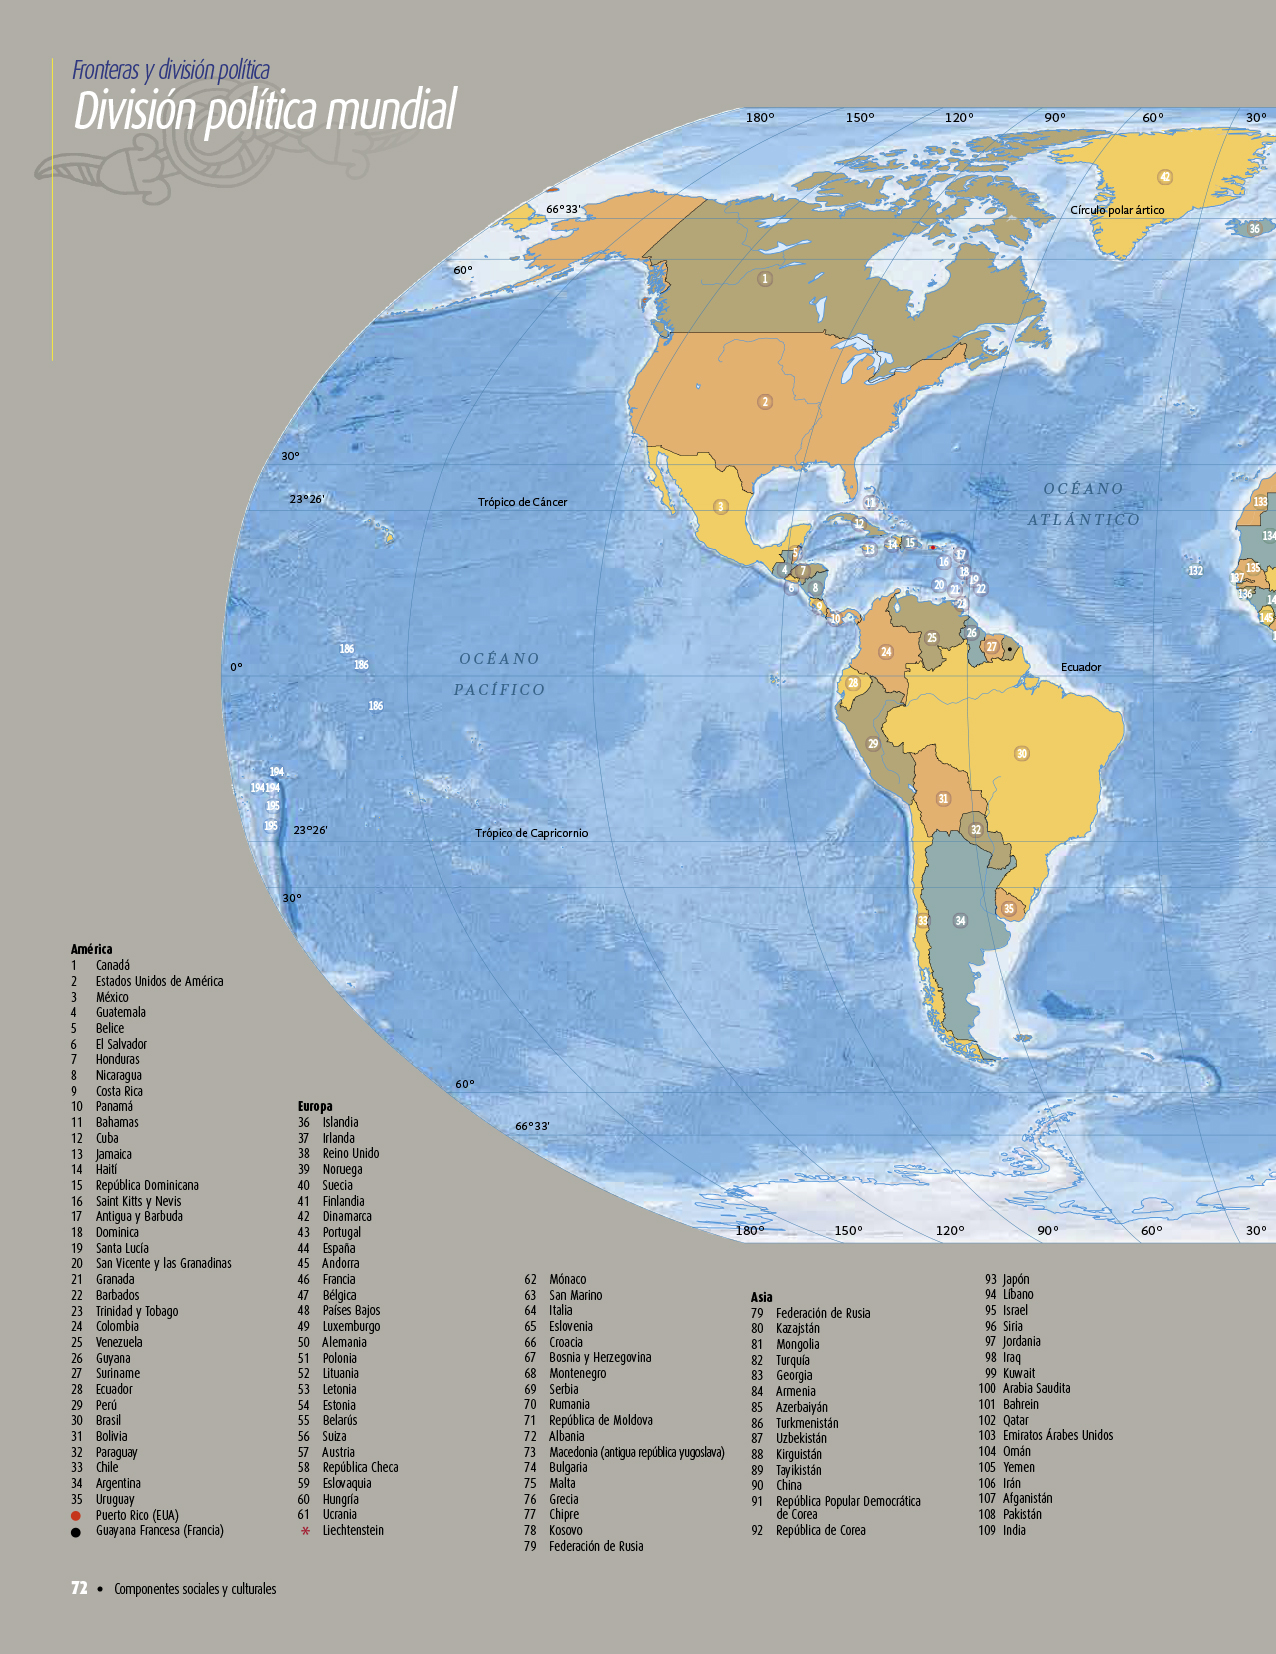 Atlas de geografía del mundo quinto grado 2017-2018 - Página 72 de 122